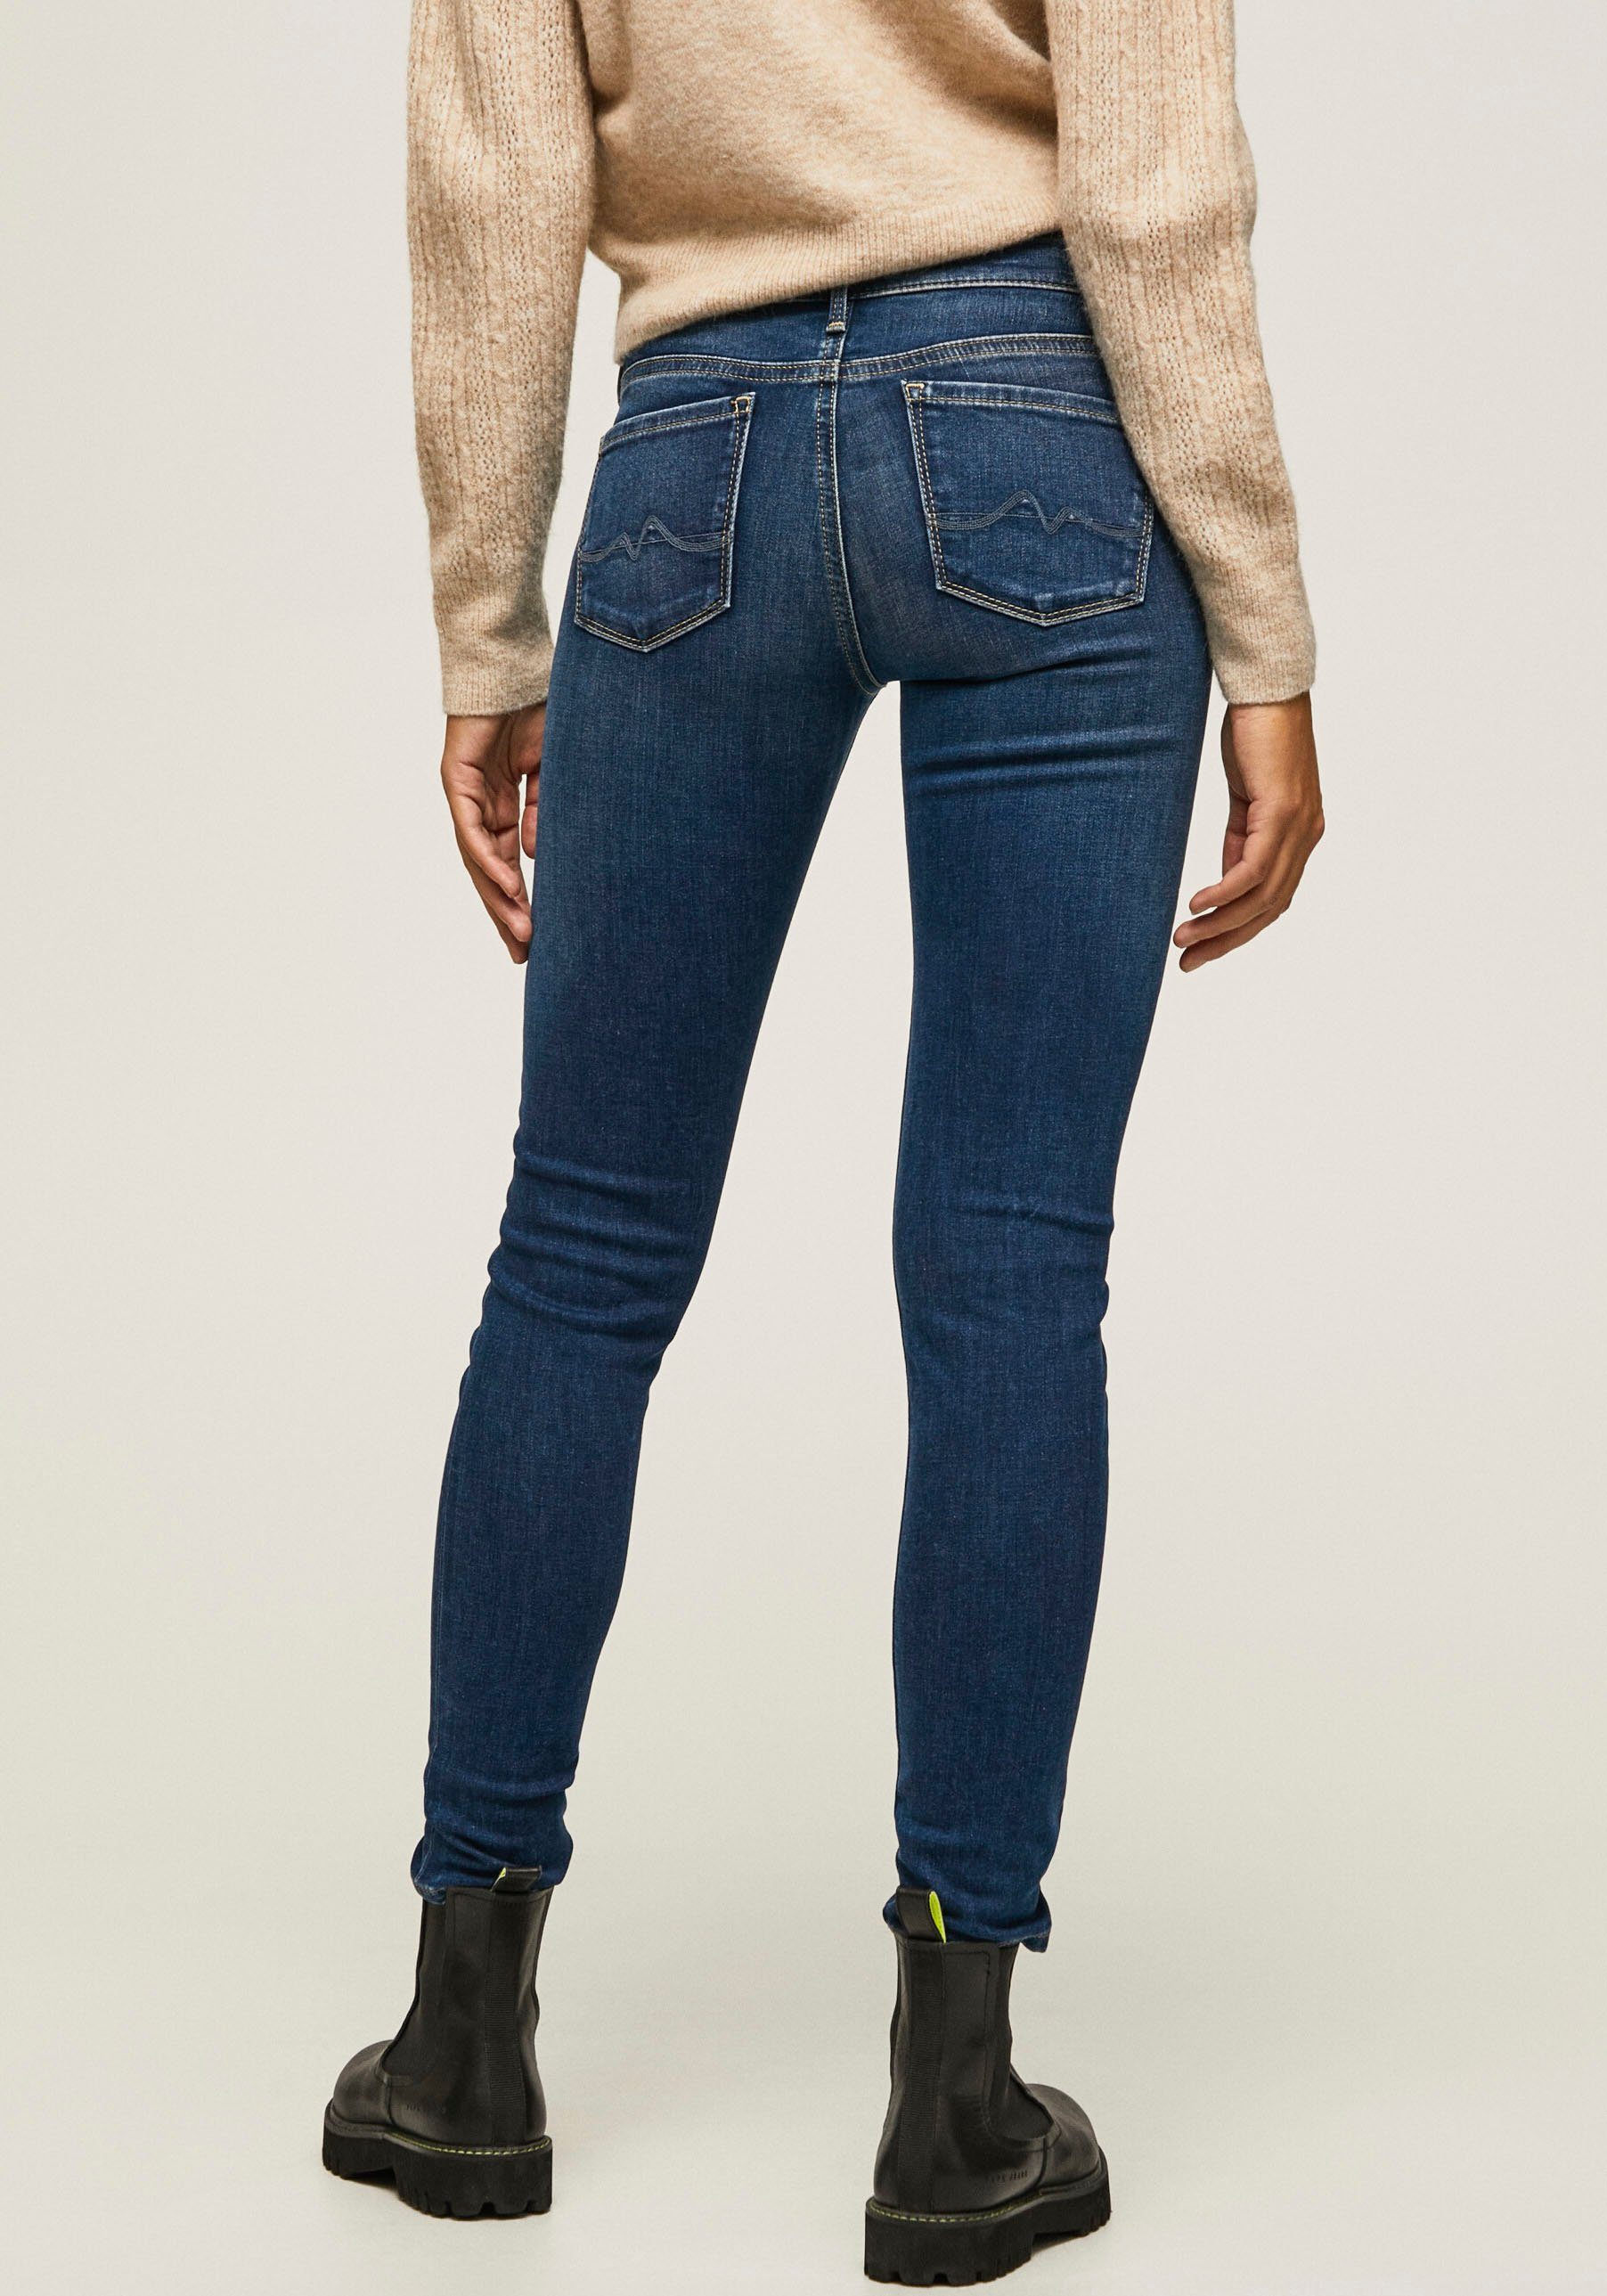 Pepe Jeans Skinny-fit-Jeans SOHO im dark 5-Pocket-Stil und mit 1-Knopf used Bund Stretch-Anteil worn